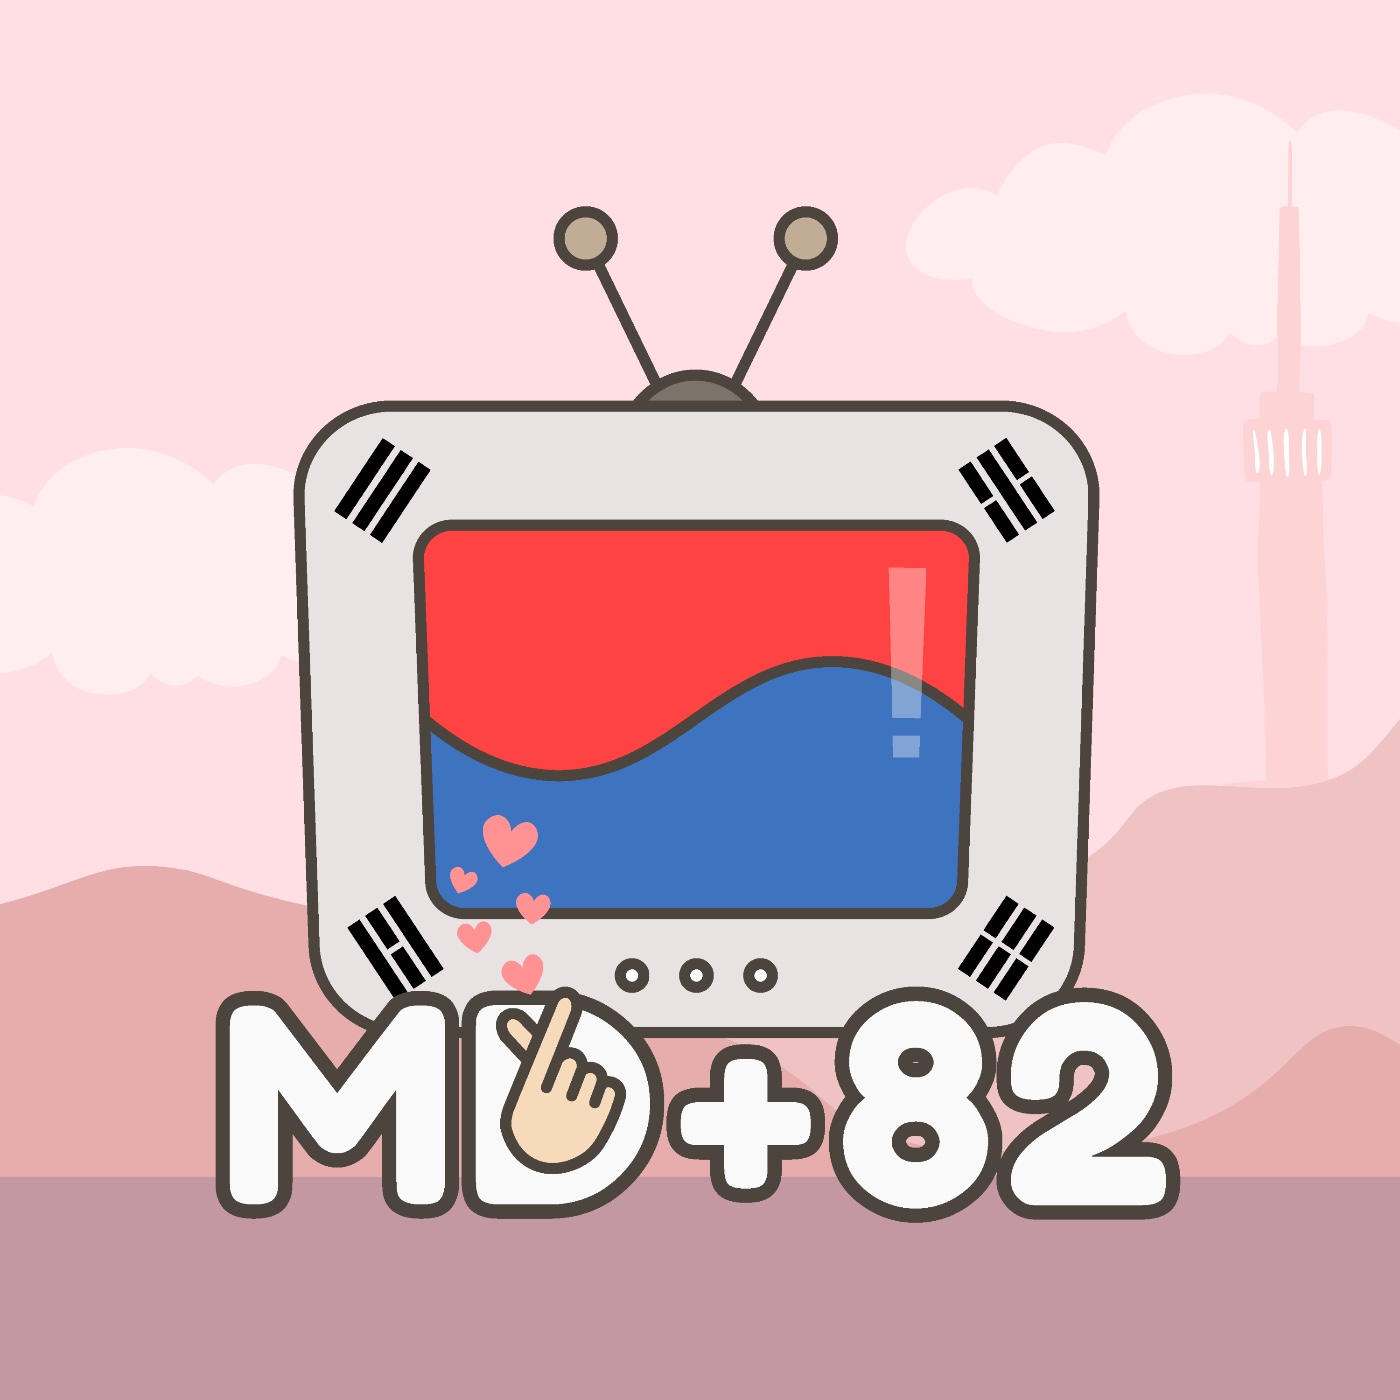 MD+82 韓國影視研究雞精會